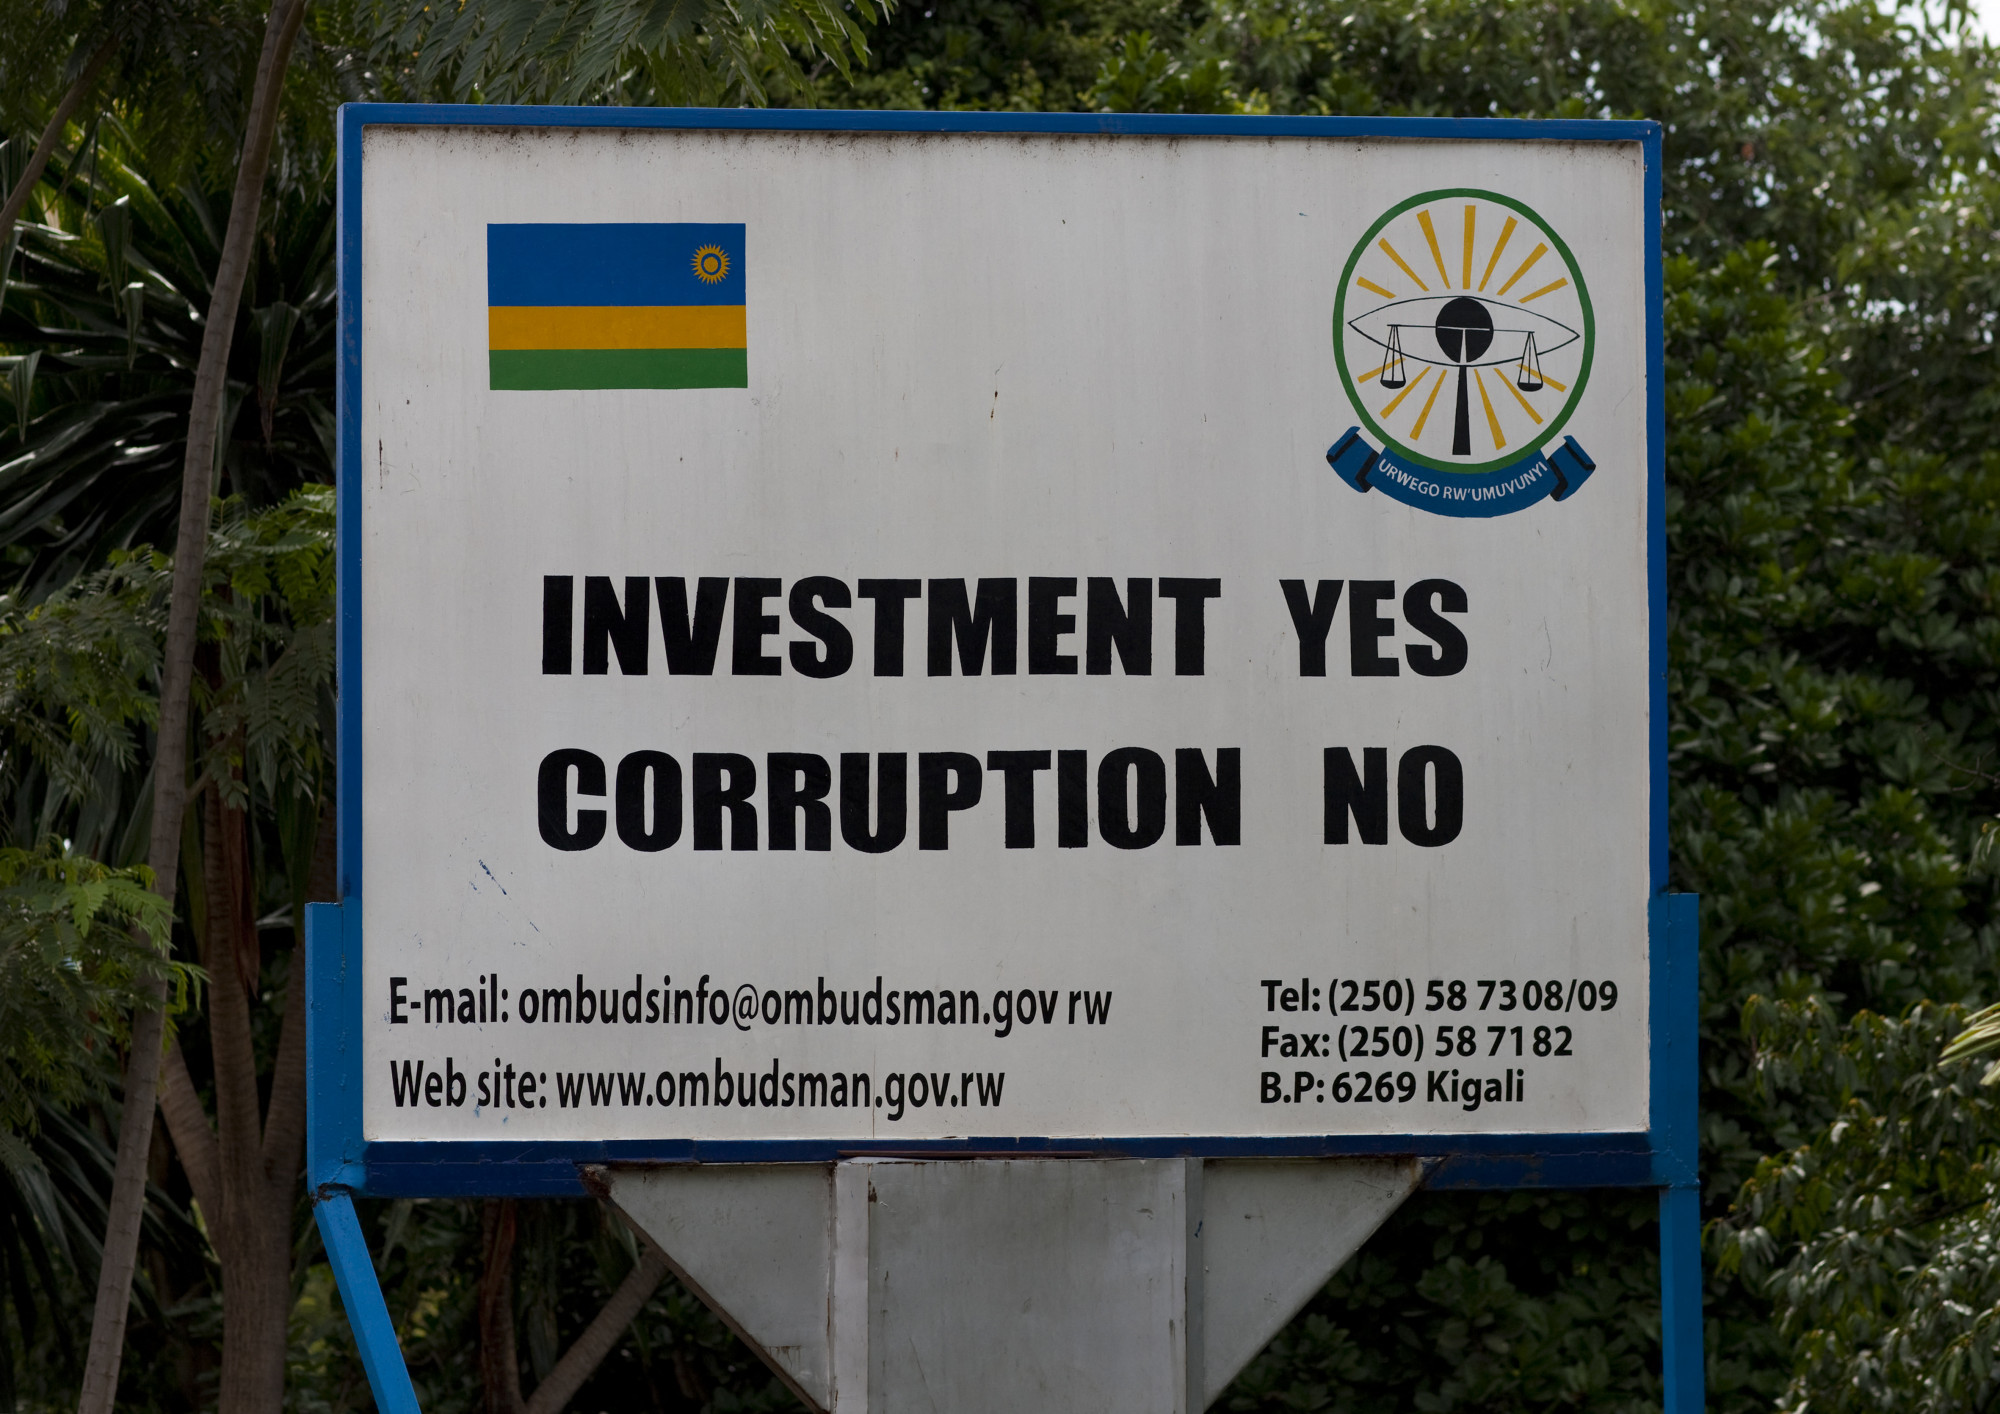 Befektetés igen, korrupció nem - óriásplakát Ruandában